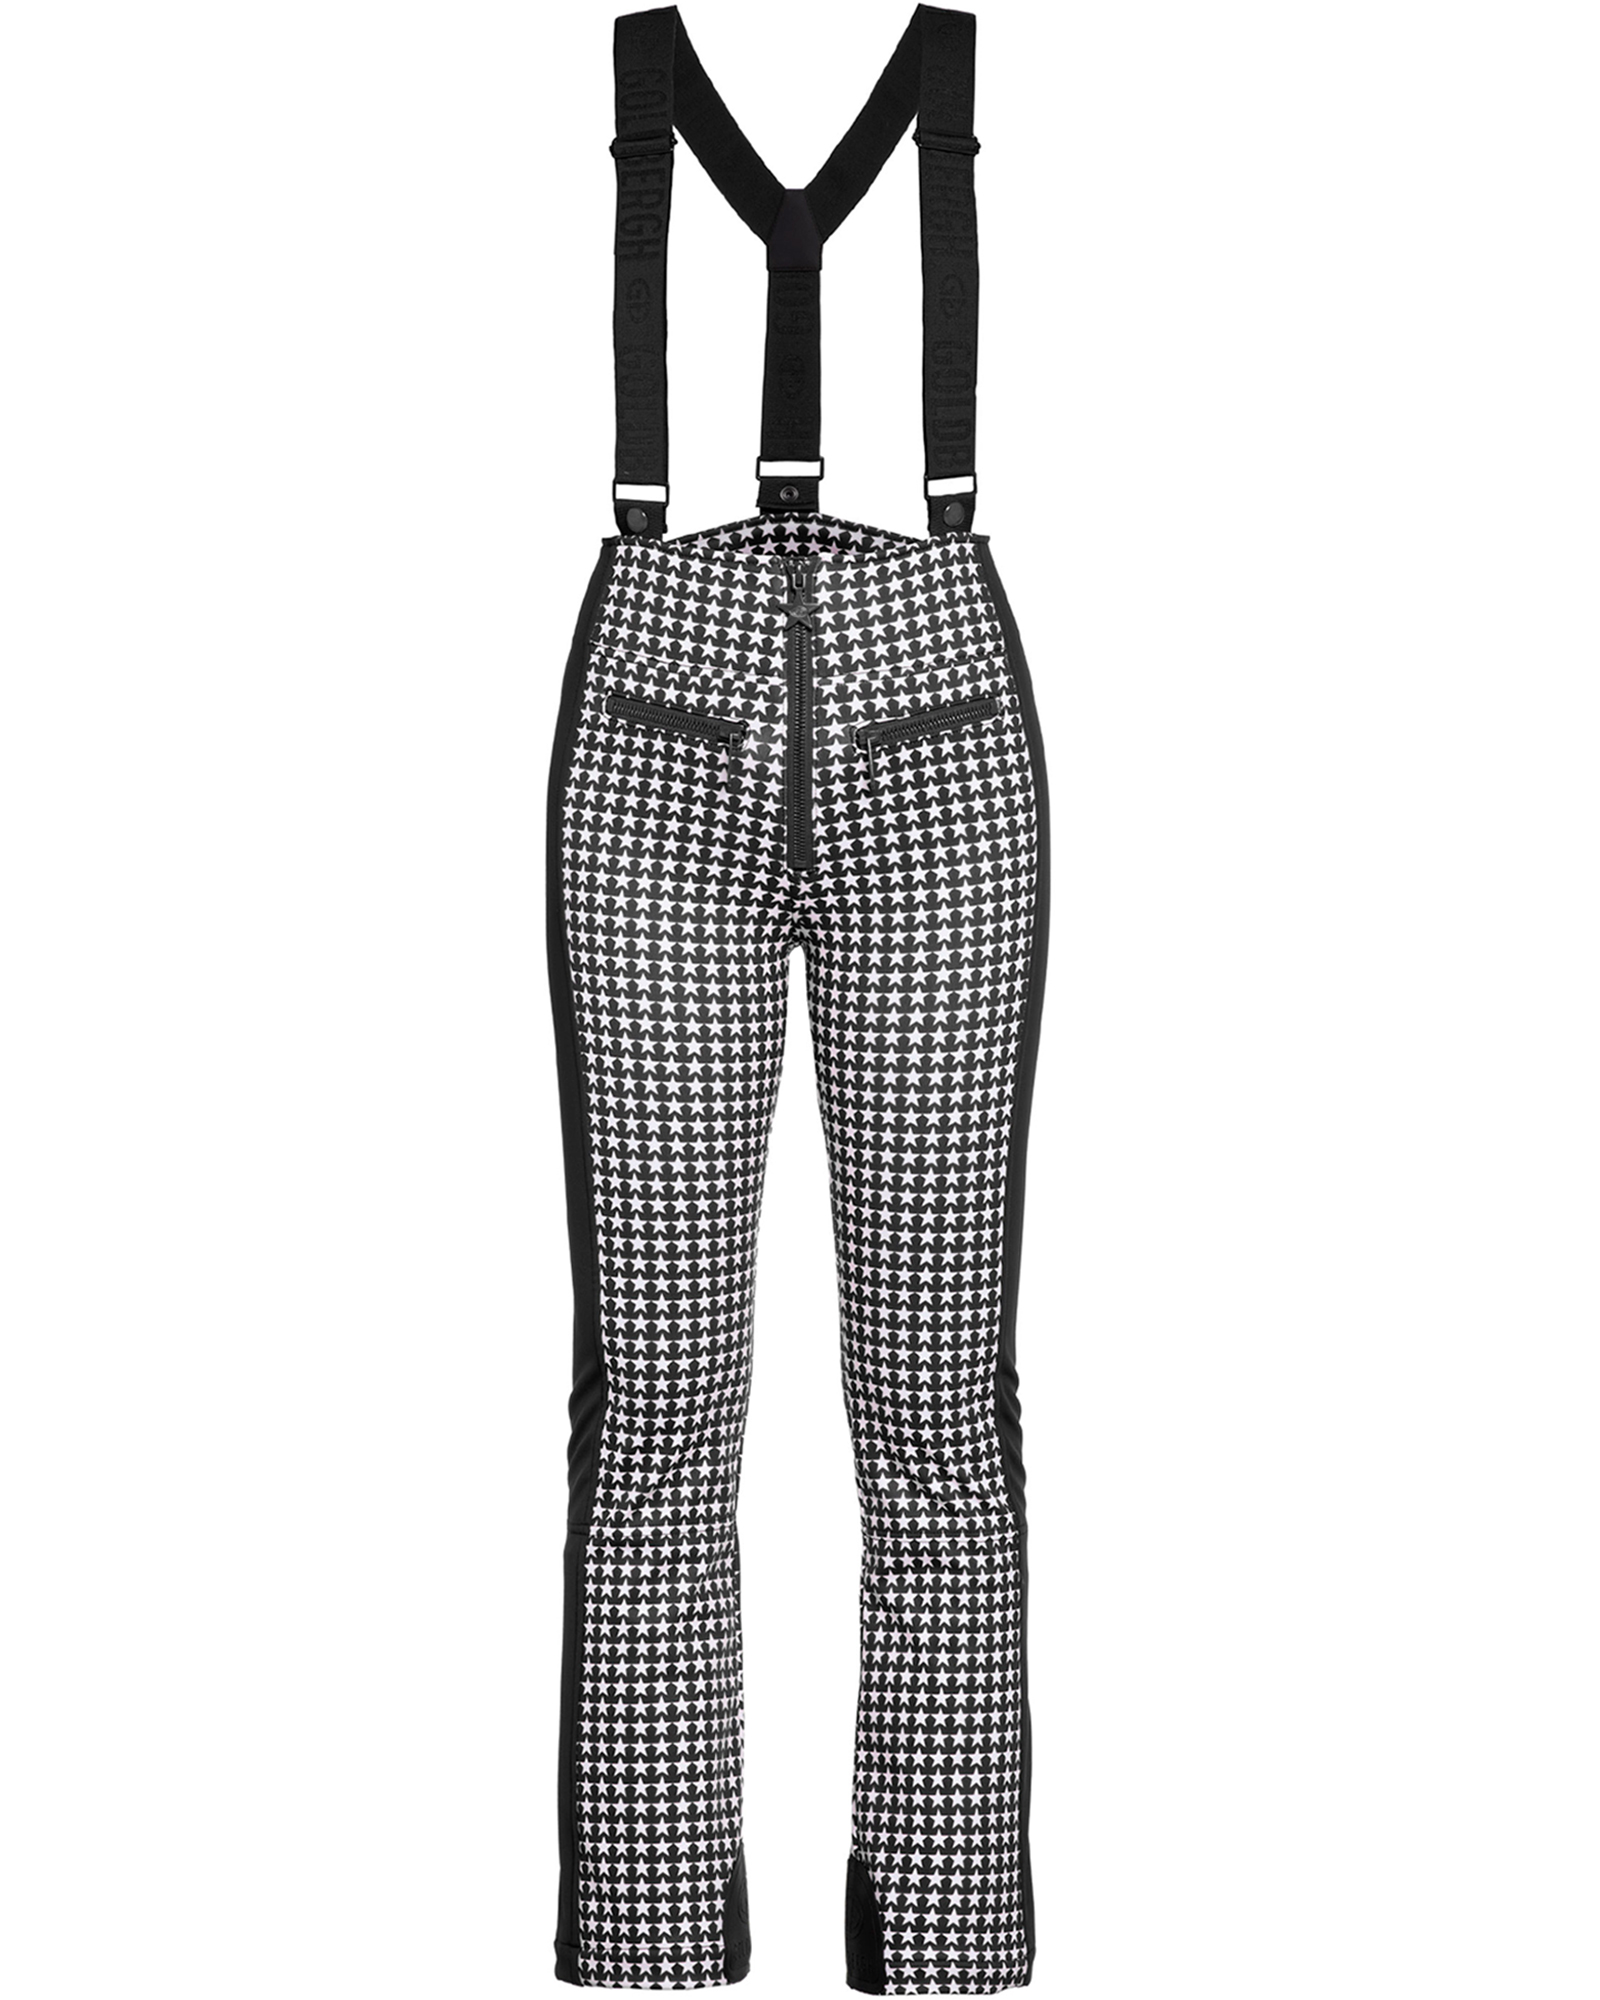 Goldbergh Women’s Starski Stretch Pants - Black/White Check 12